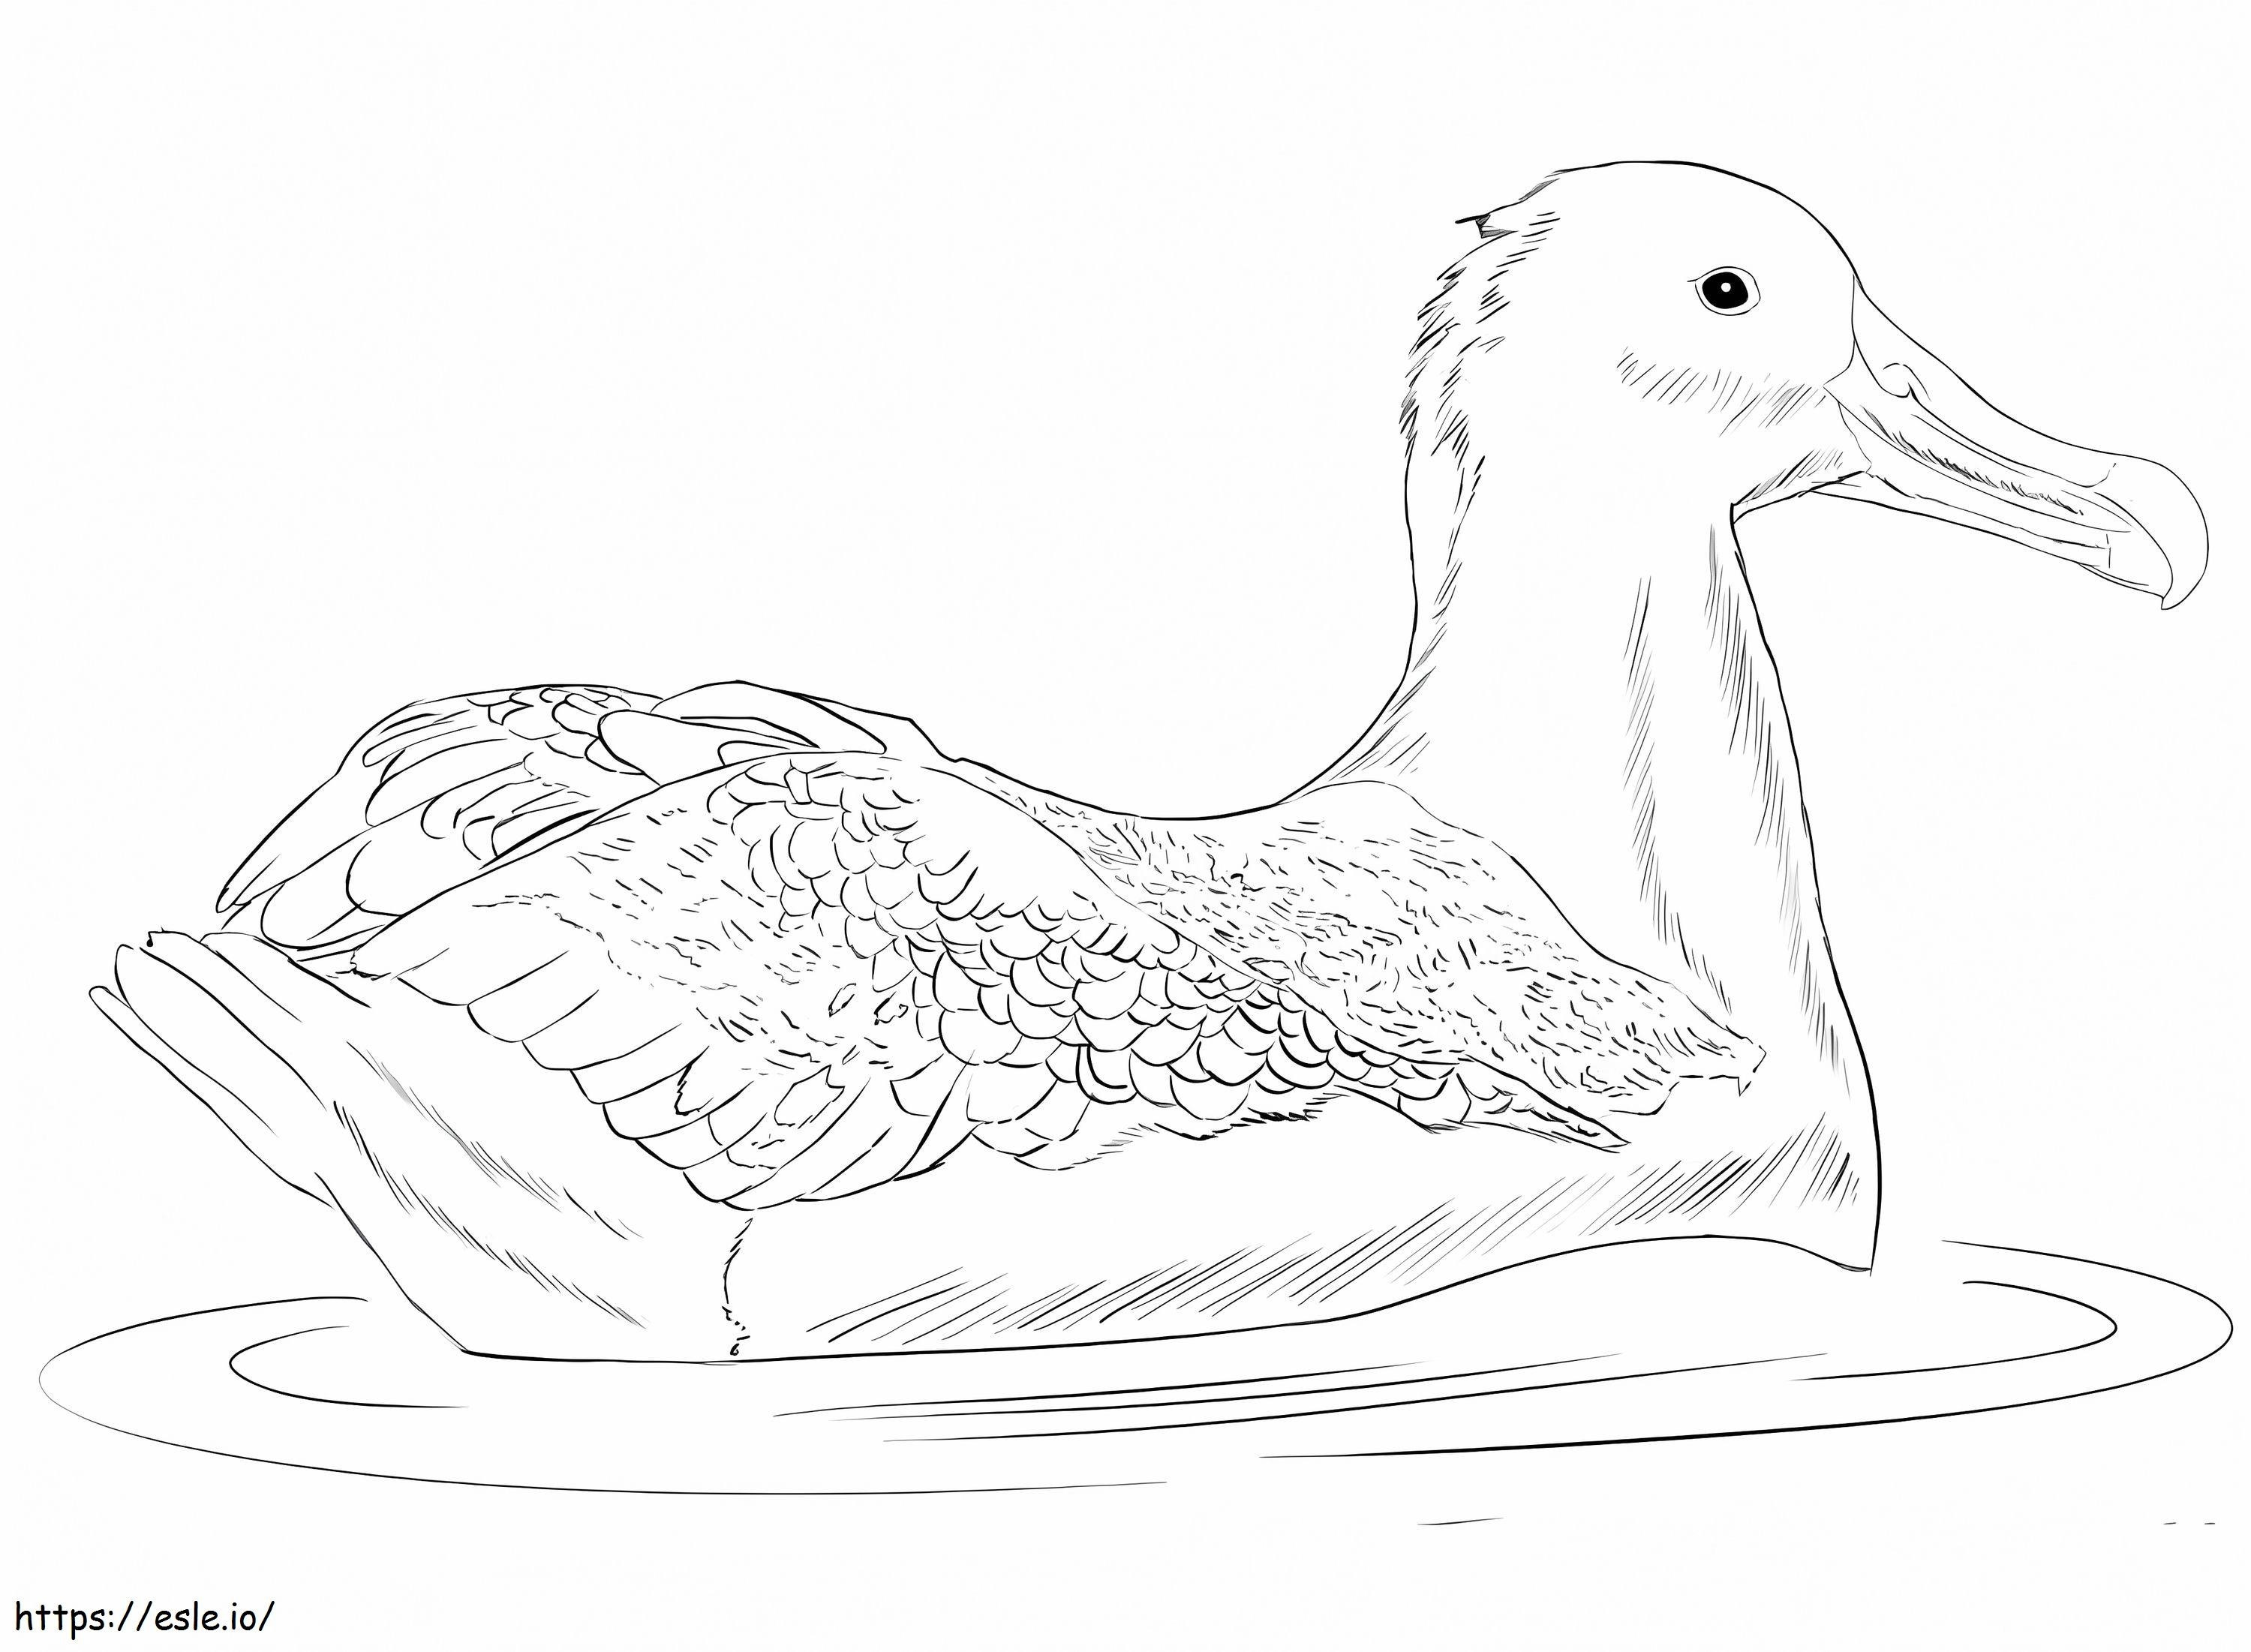 Büyük Albatros boyama